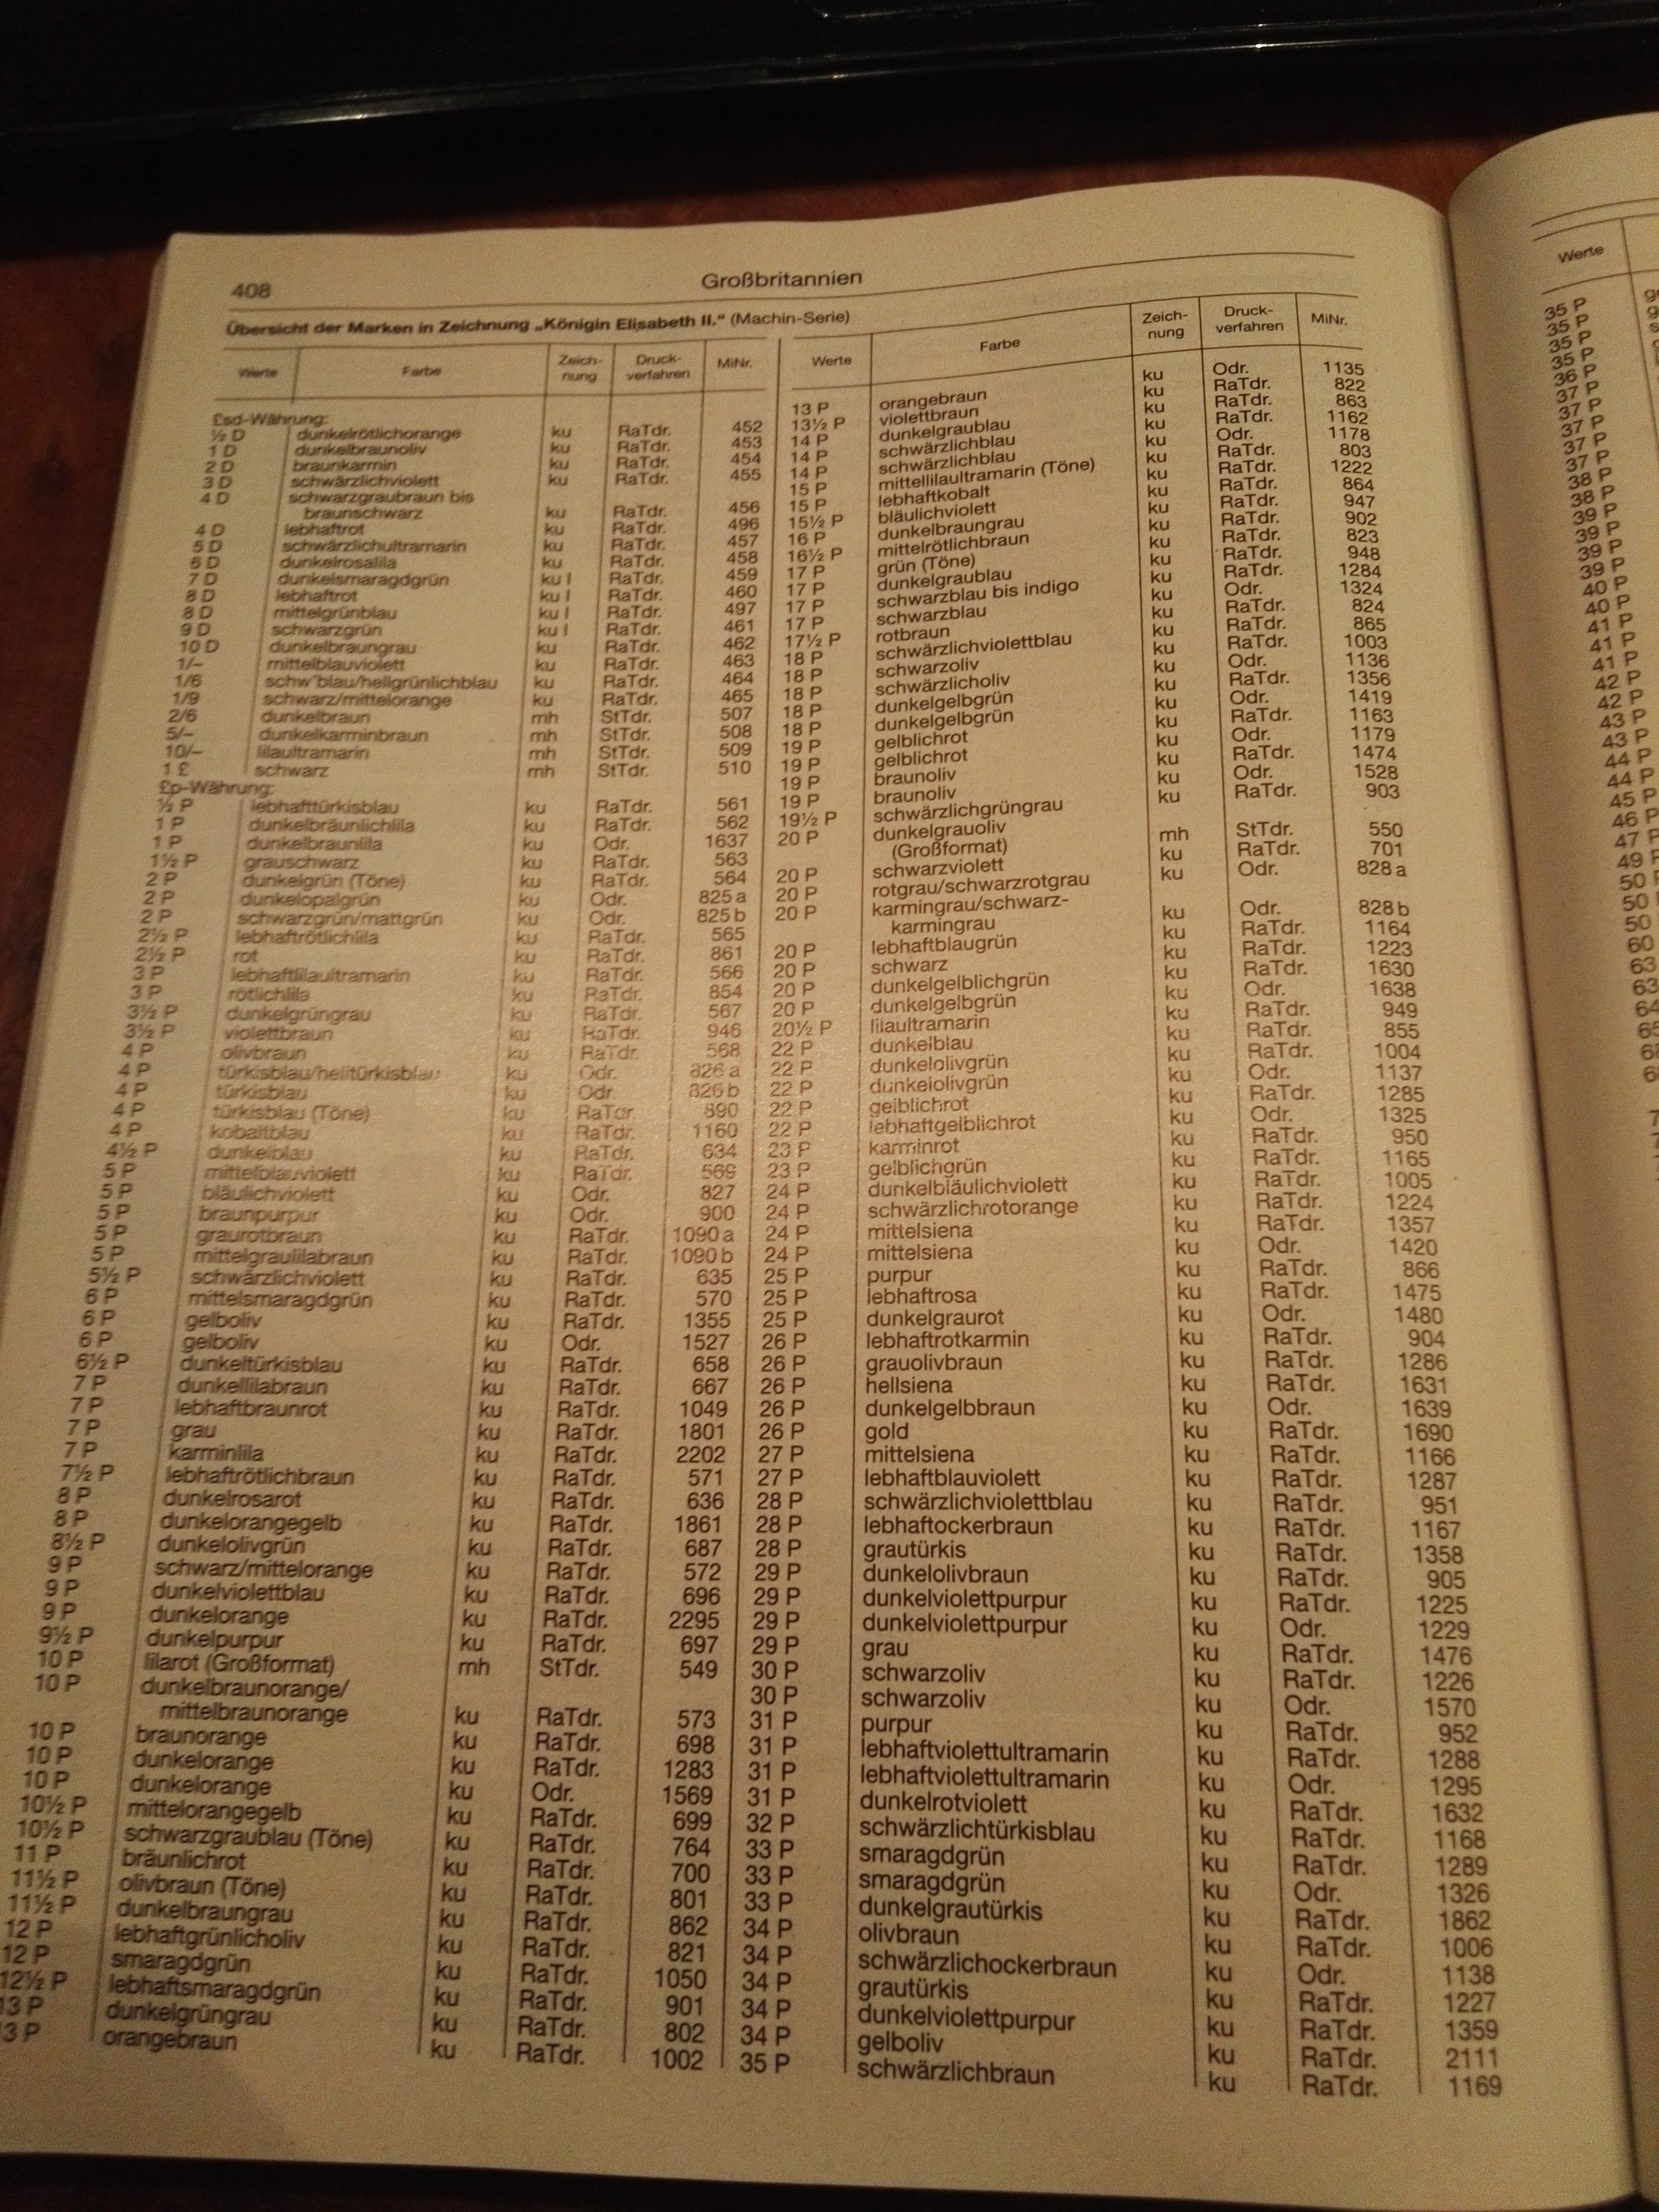 lijst van elisabeth zegels in Michel Catalogus Groot-Britannië.jpg